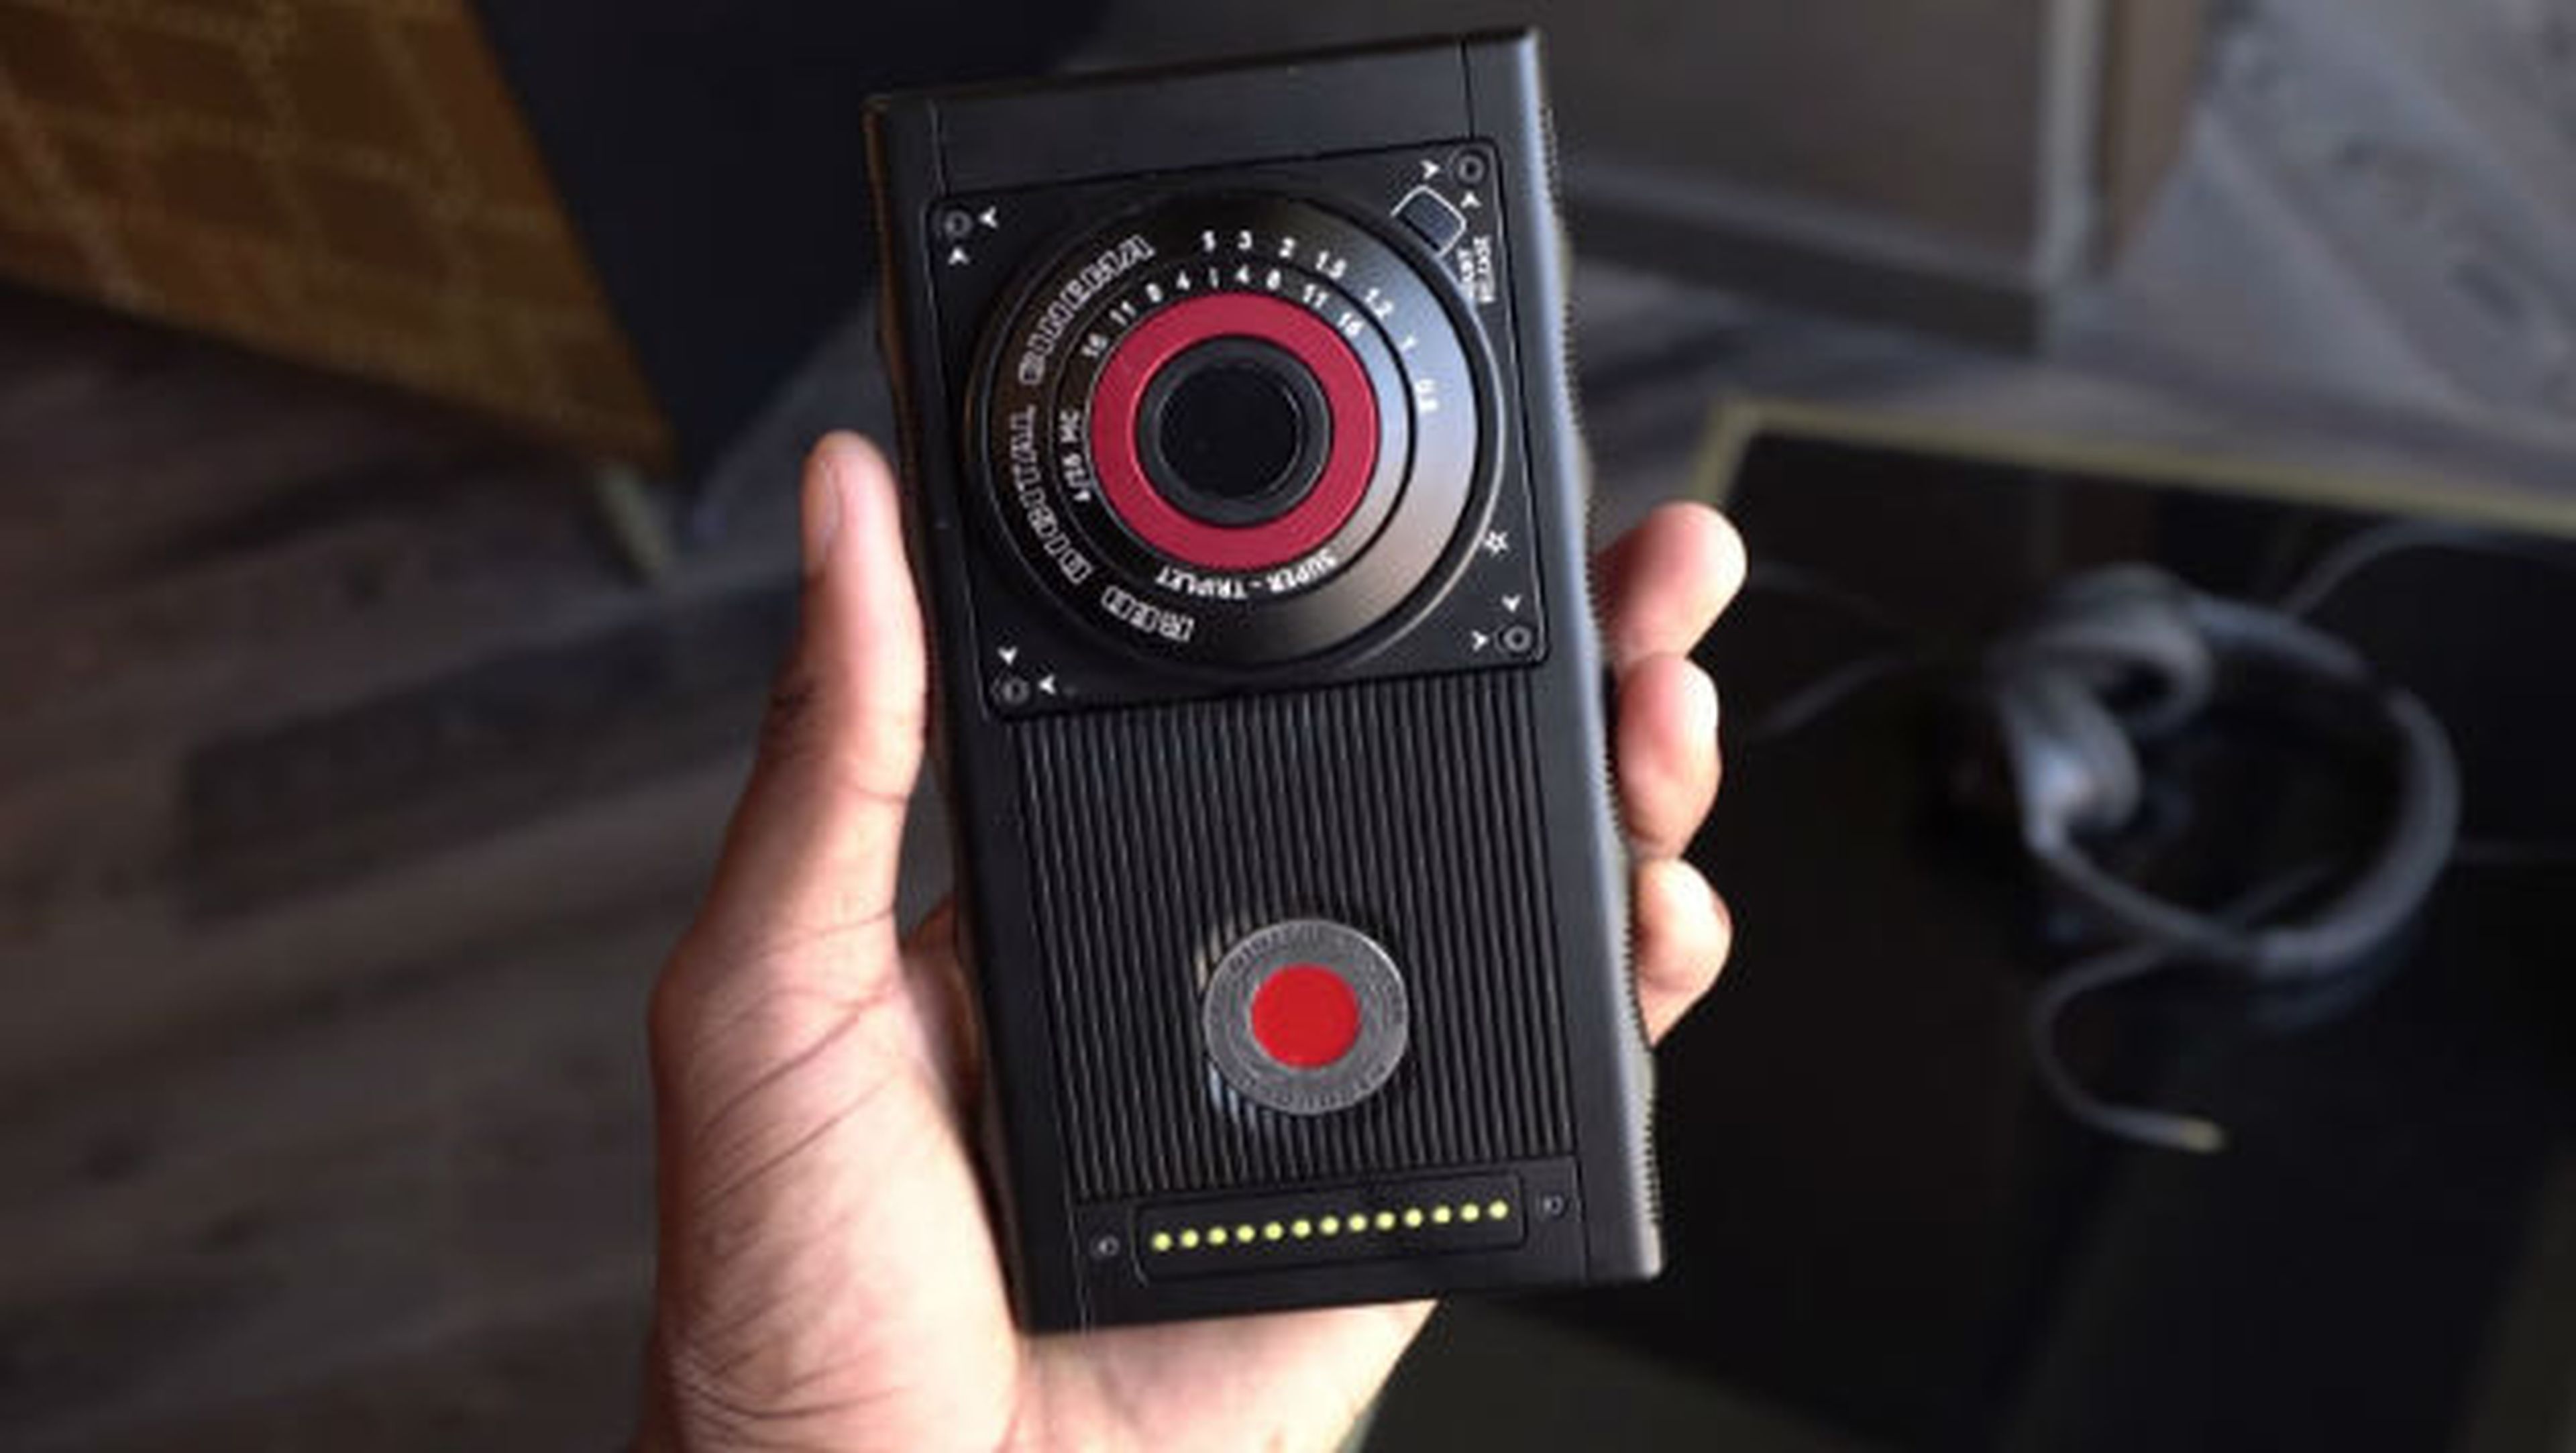 Ya podemos ver el prototipo de teléfono holográfico creado por el fabricante de cámaras RED